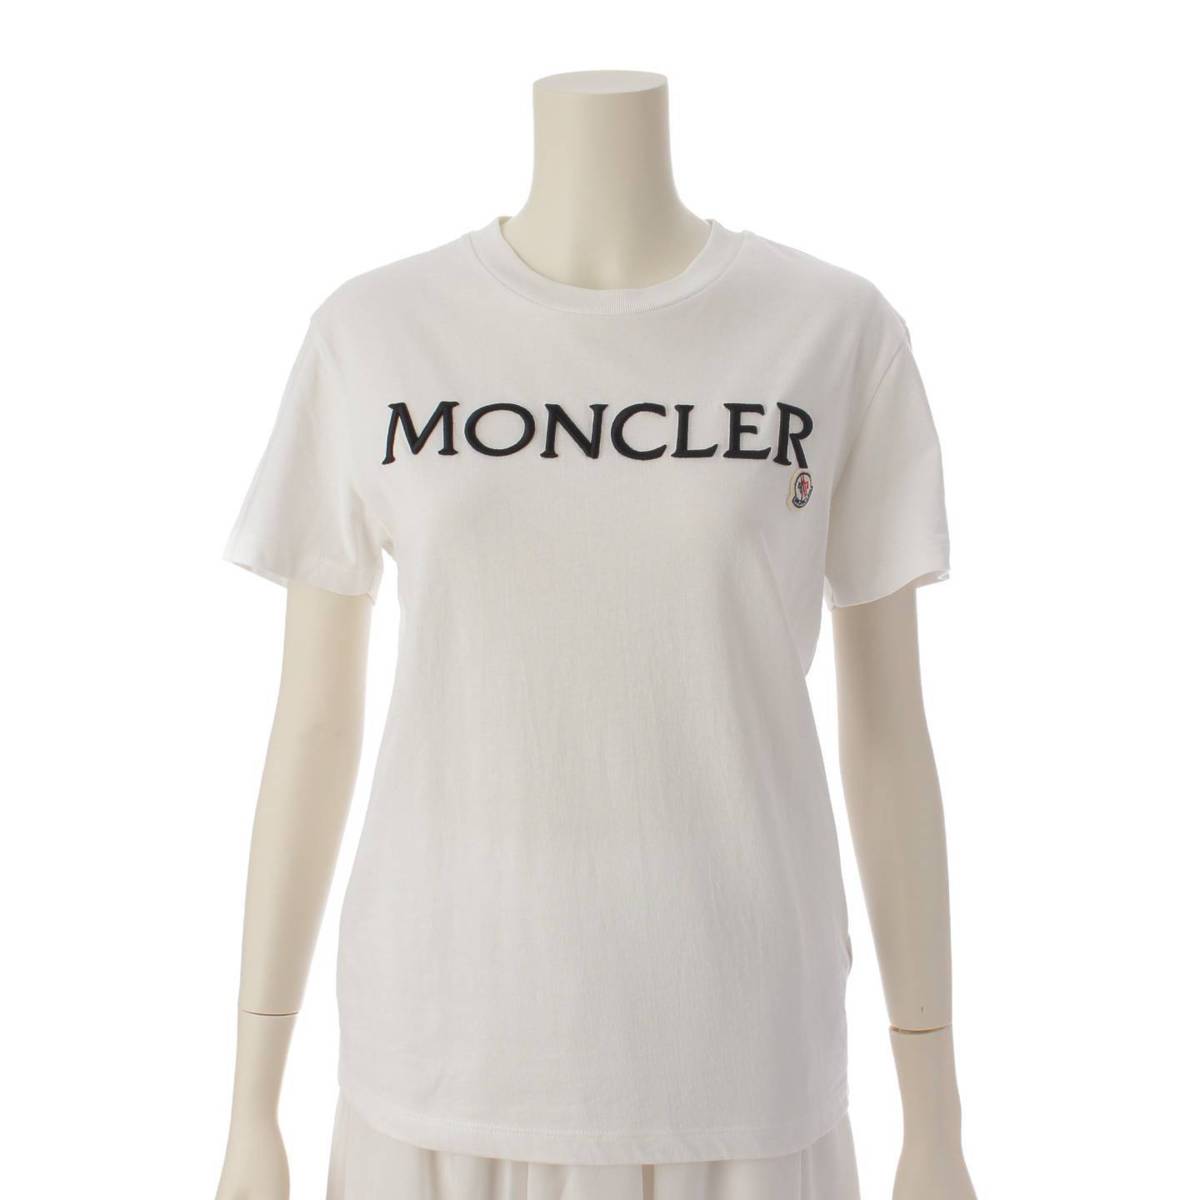 ★極美品★ MONCLER Tシャツ S ネイビー MAGLIA 赤字 完売品